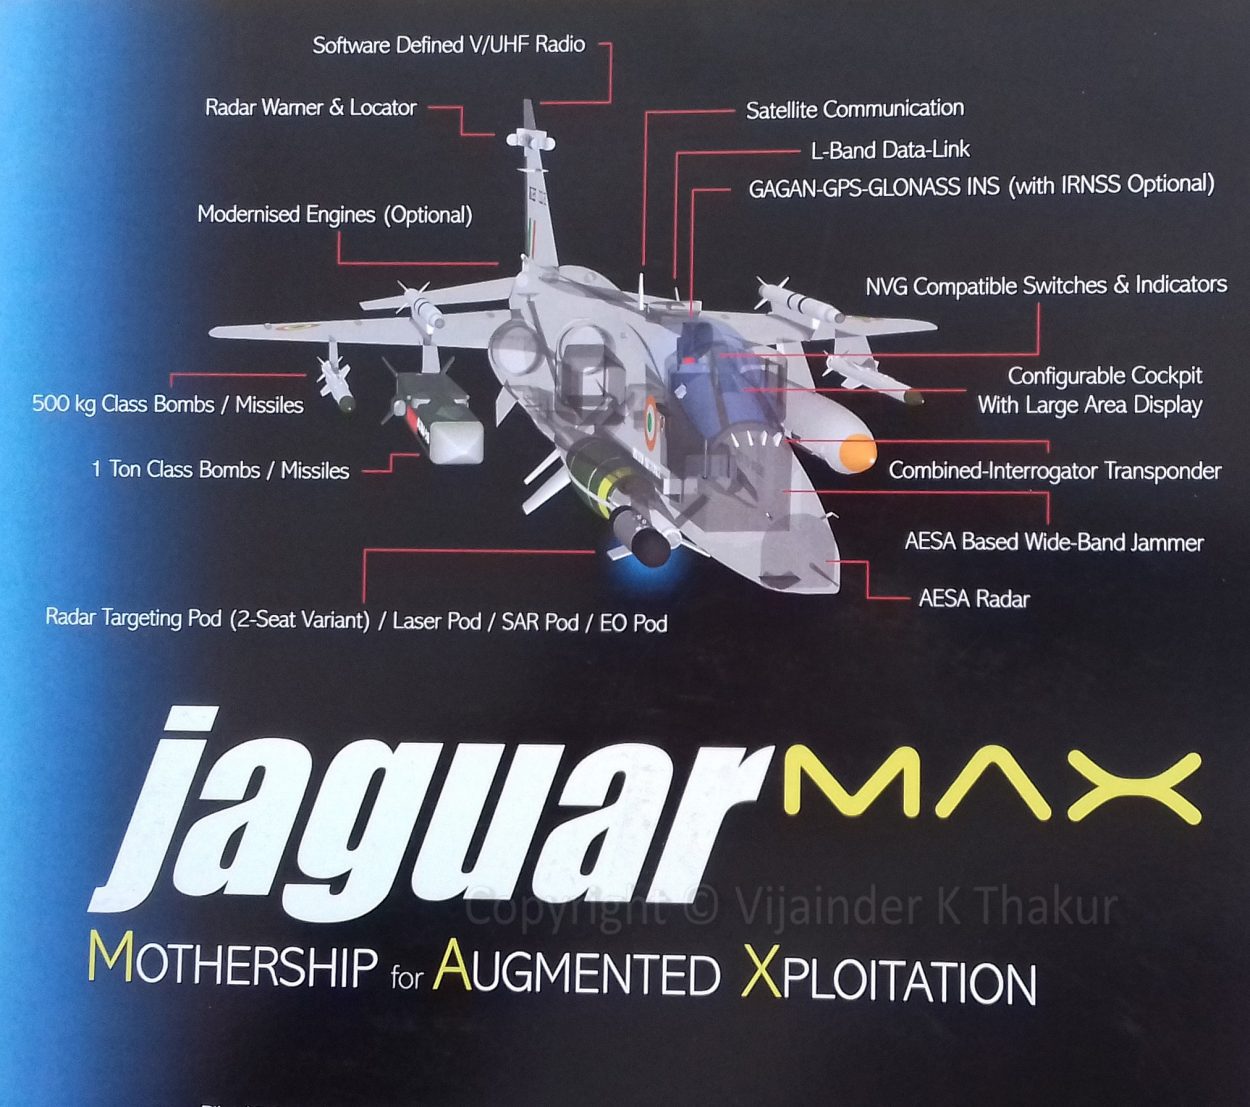 Jaguar-max